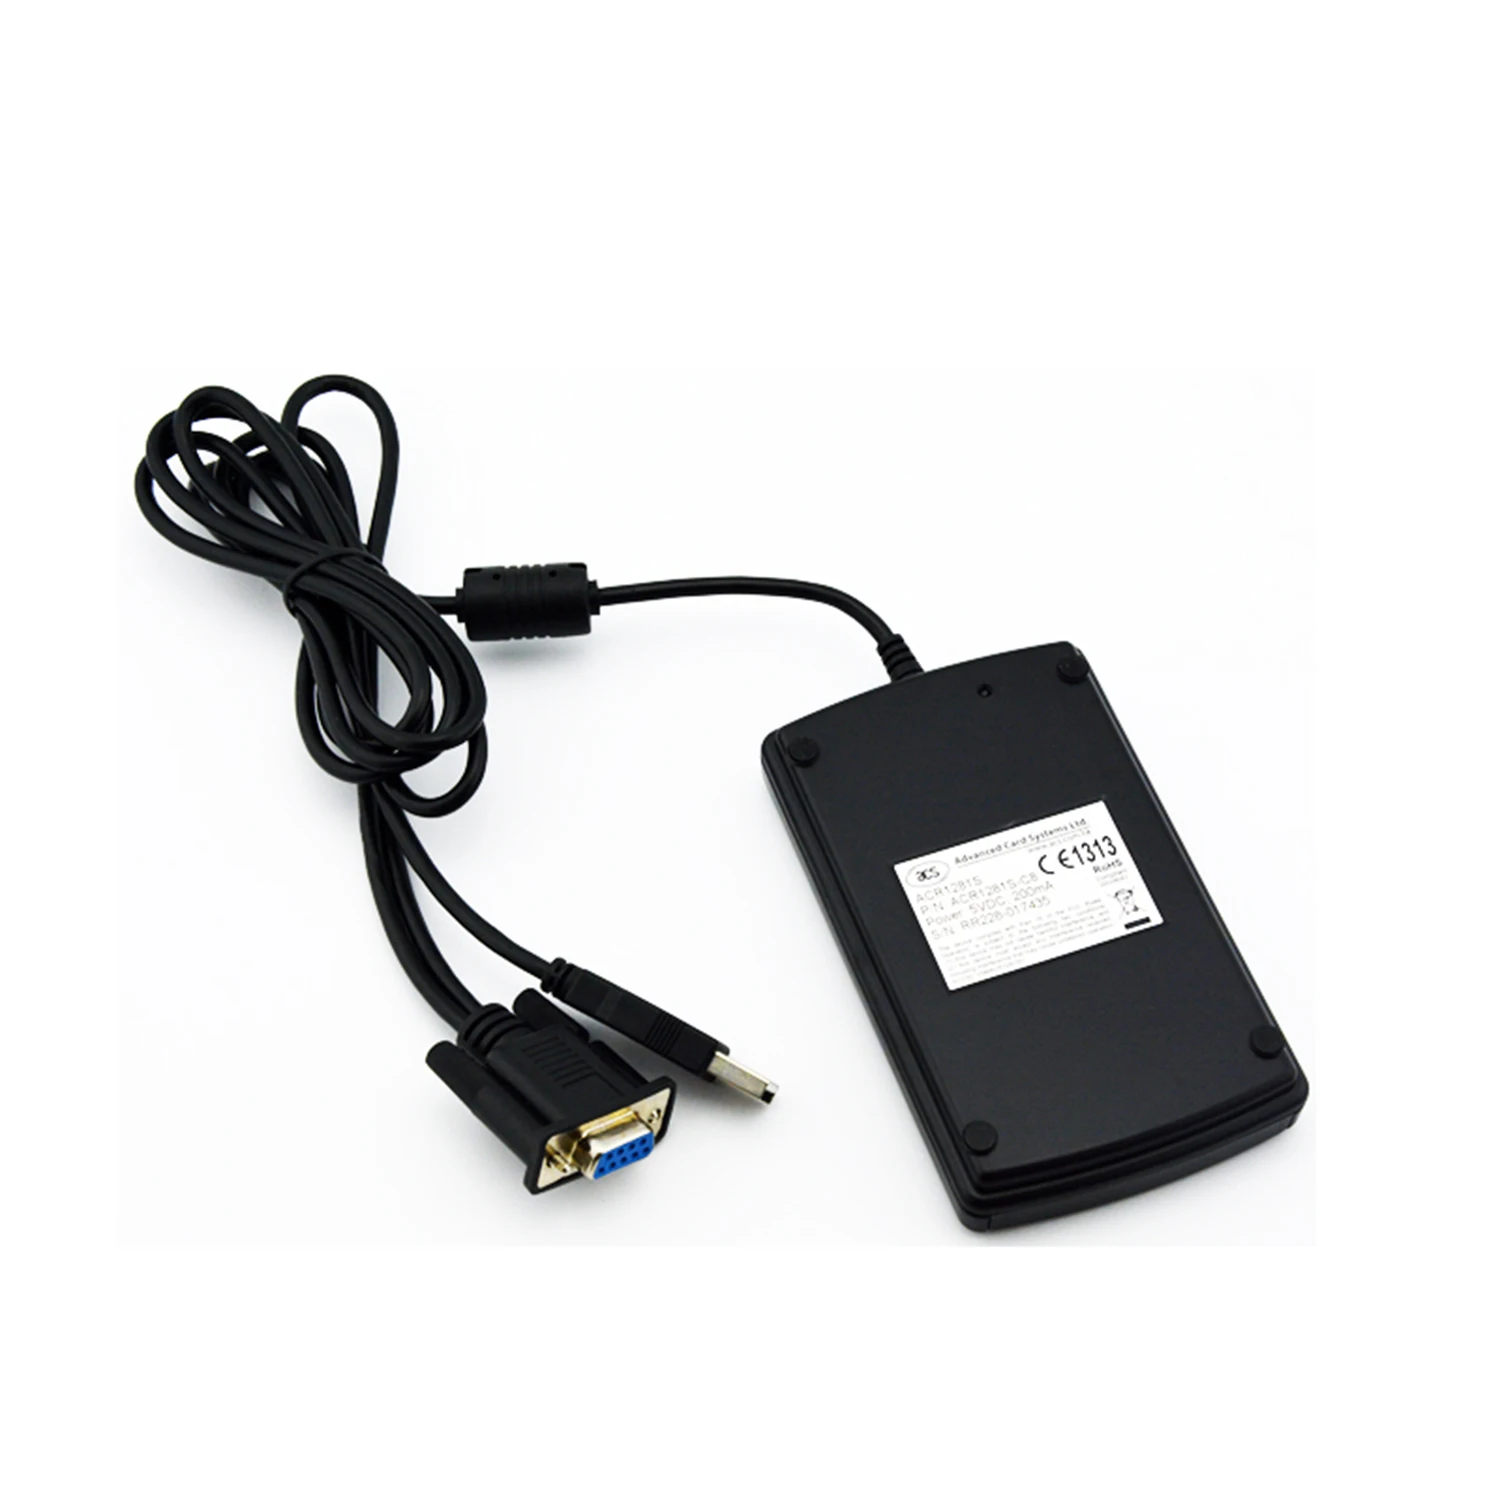 μFR Advance - Lector RFID NFC Escritor USB 13.56Mhz SDK GRATUITO + 5  muestras de tarjetas/etiquetas